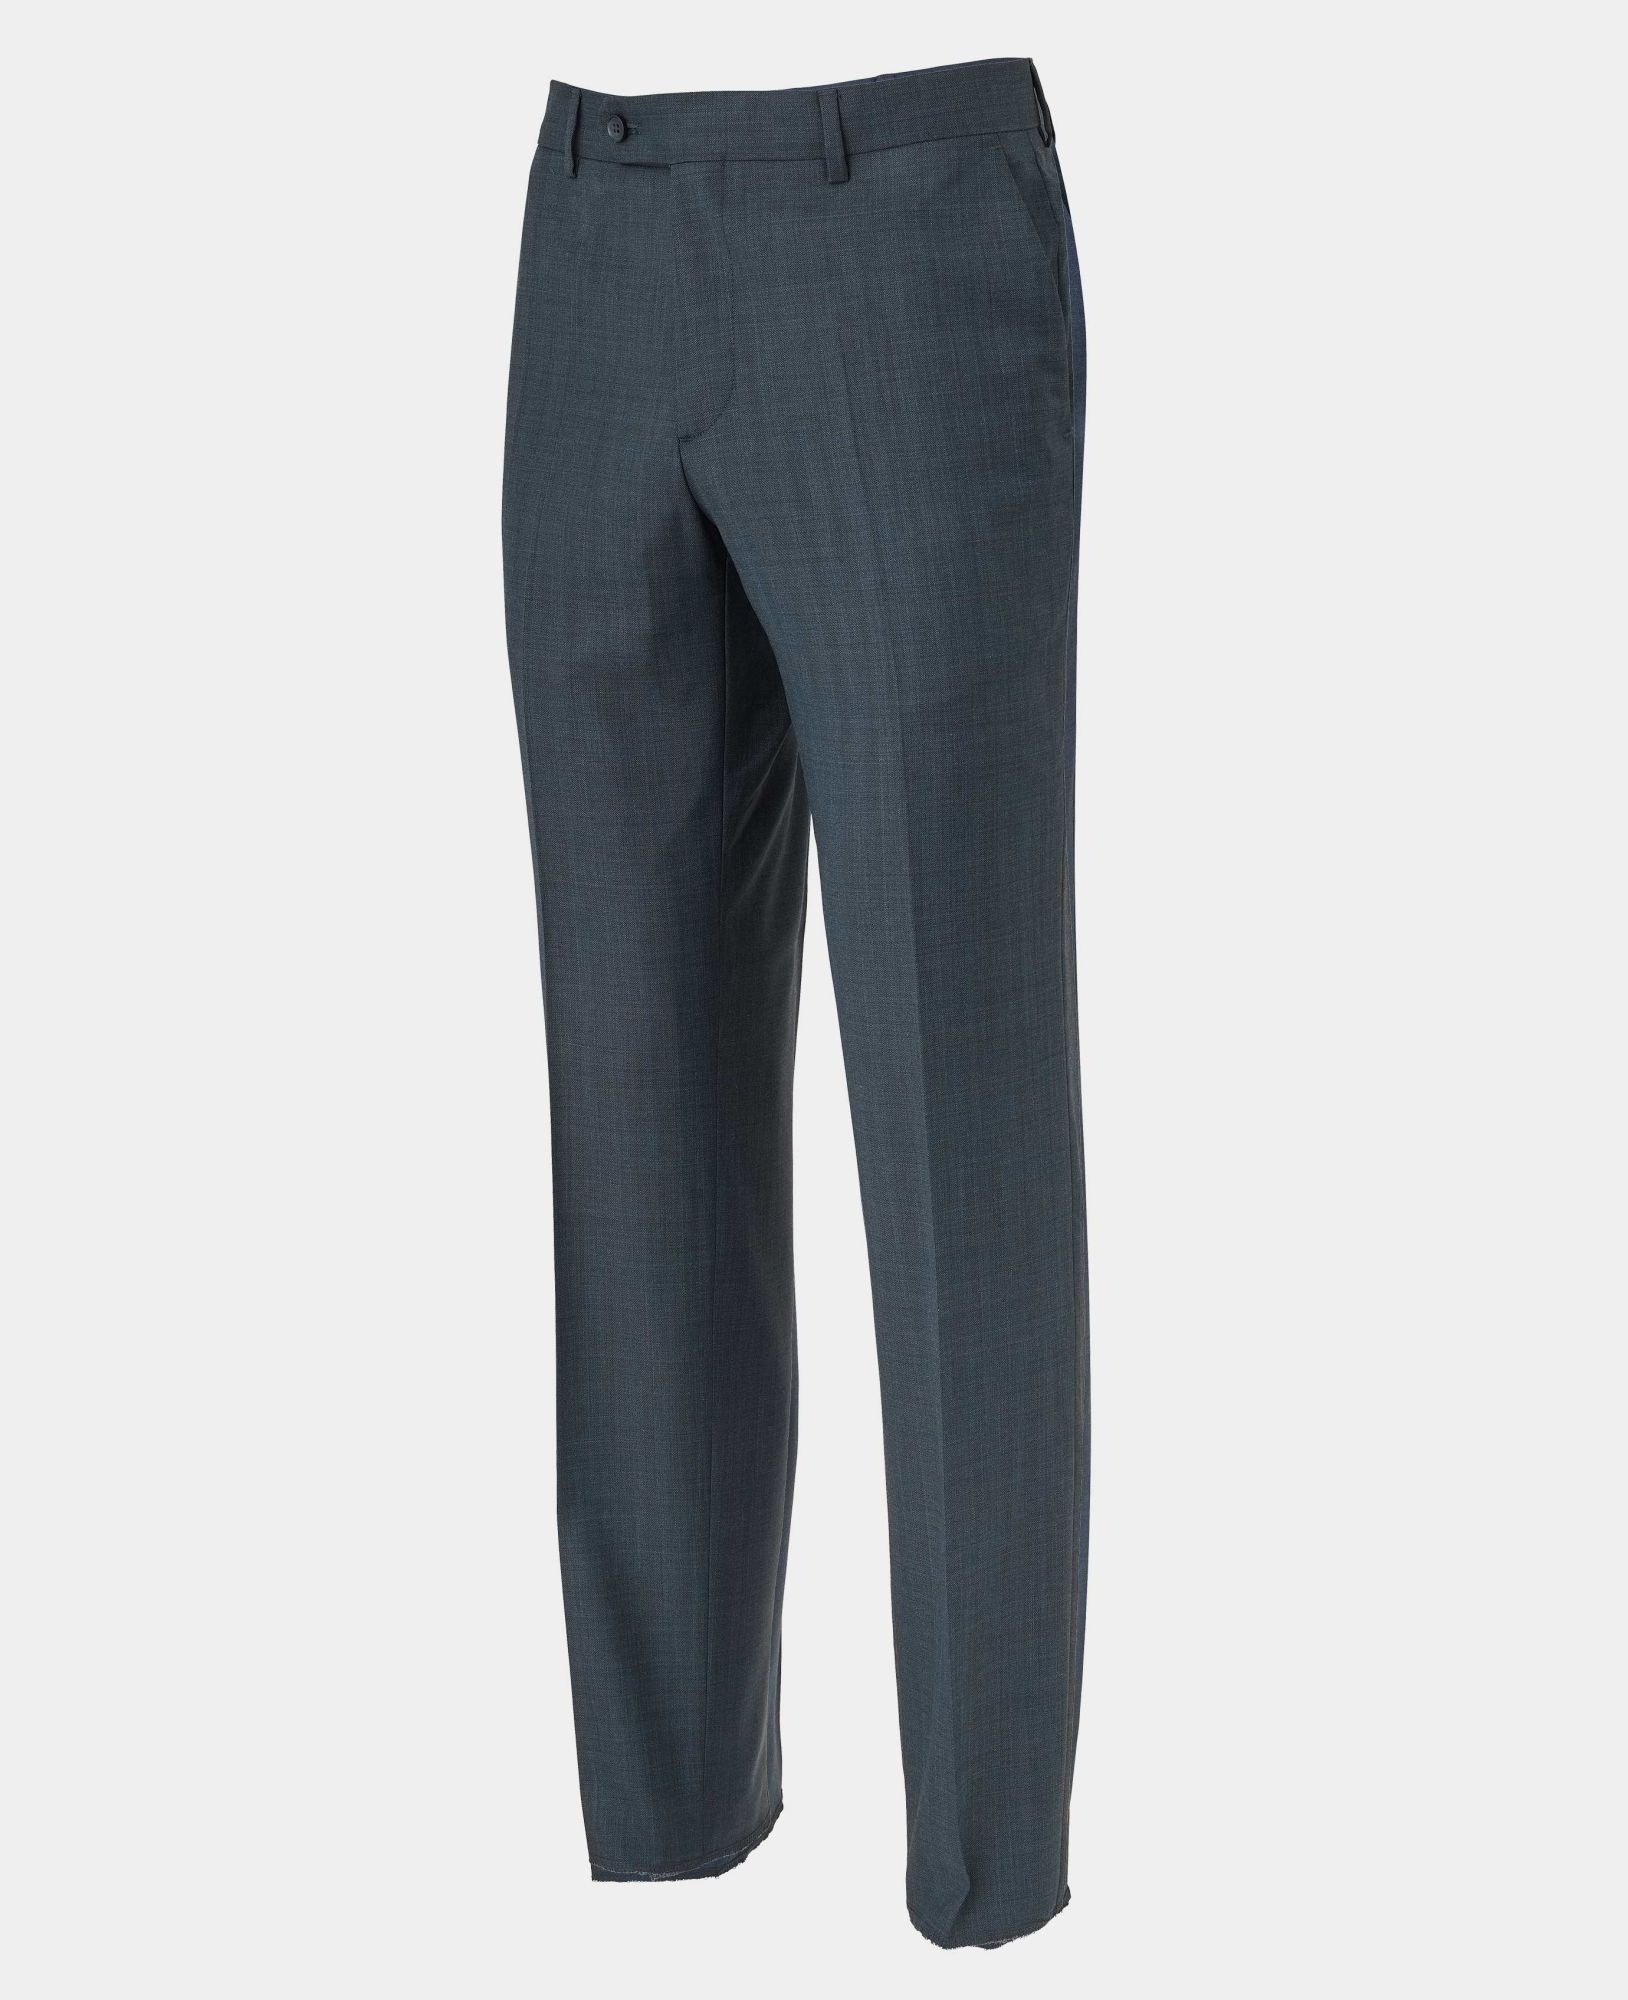 Navy Herringbone Wool-Blend Suit Trousers 44